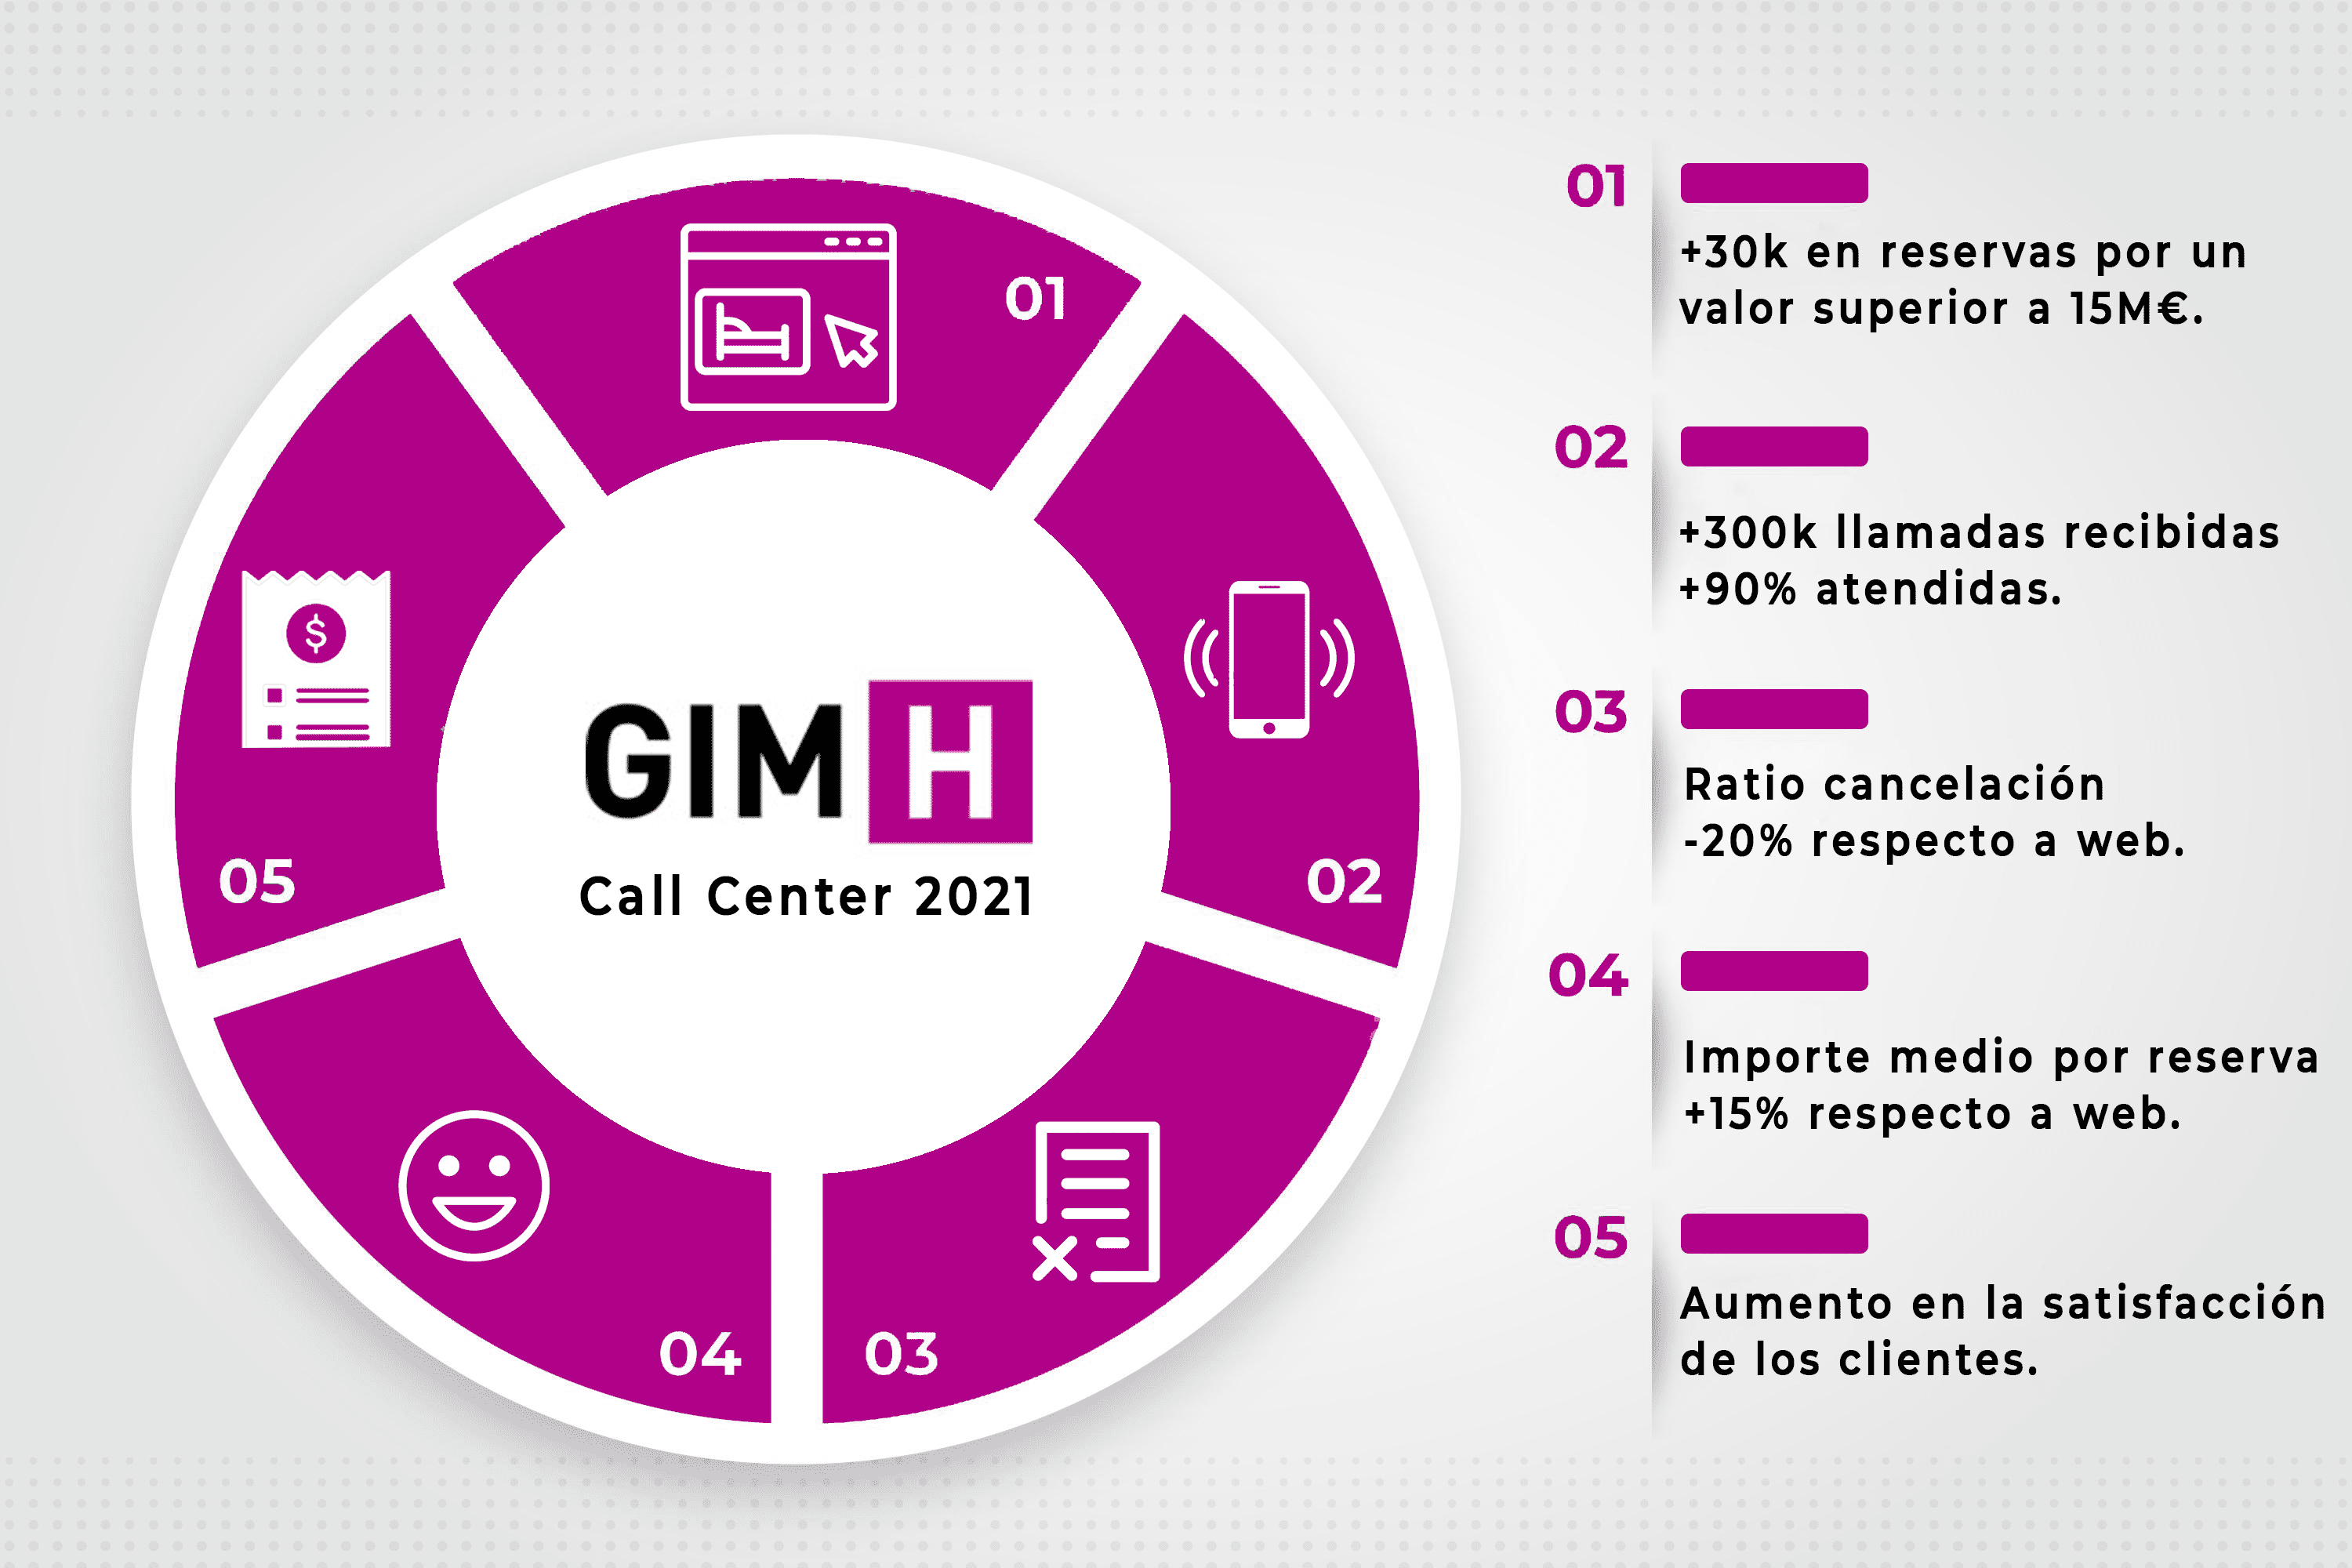 Call Center GIMH 2021